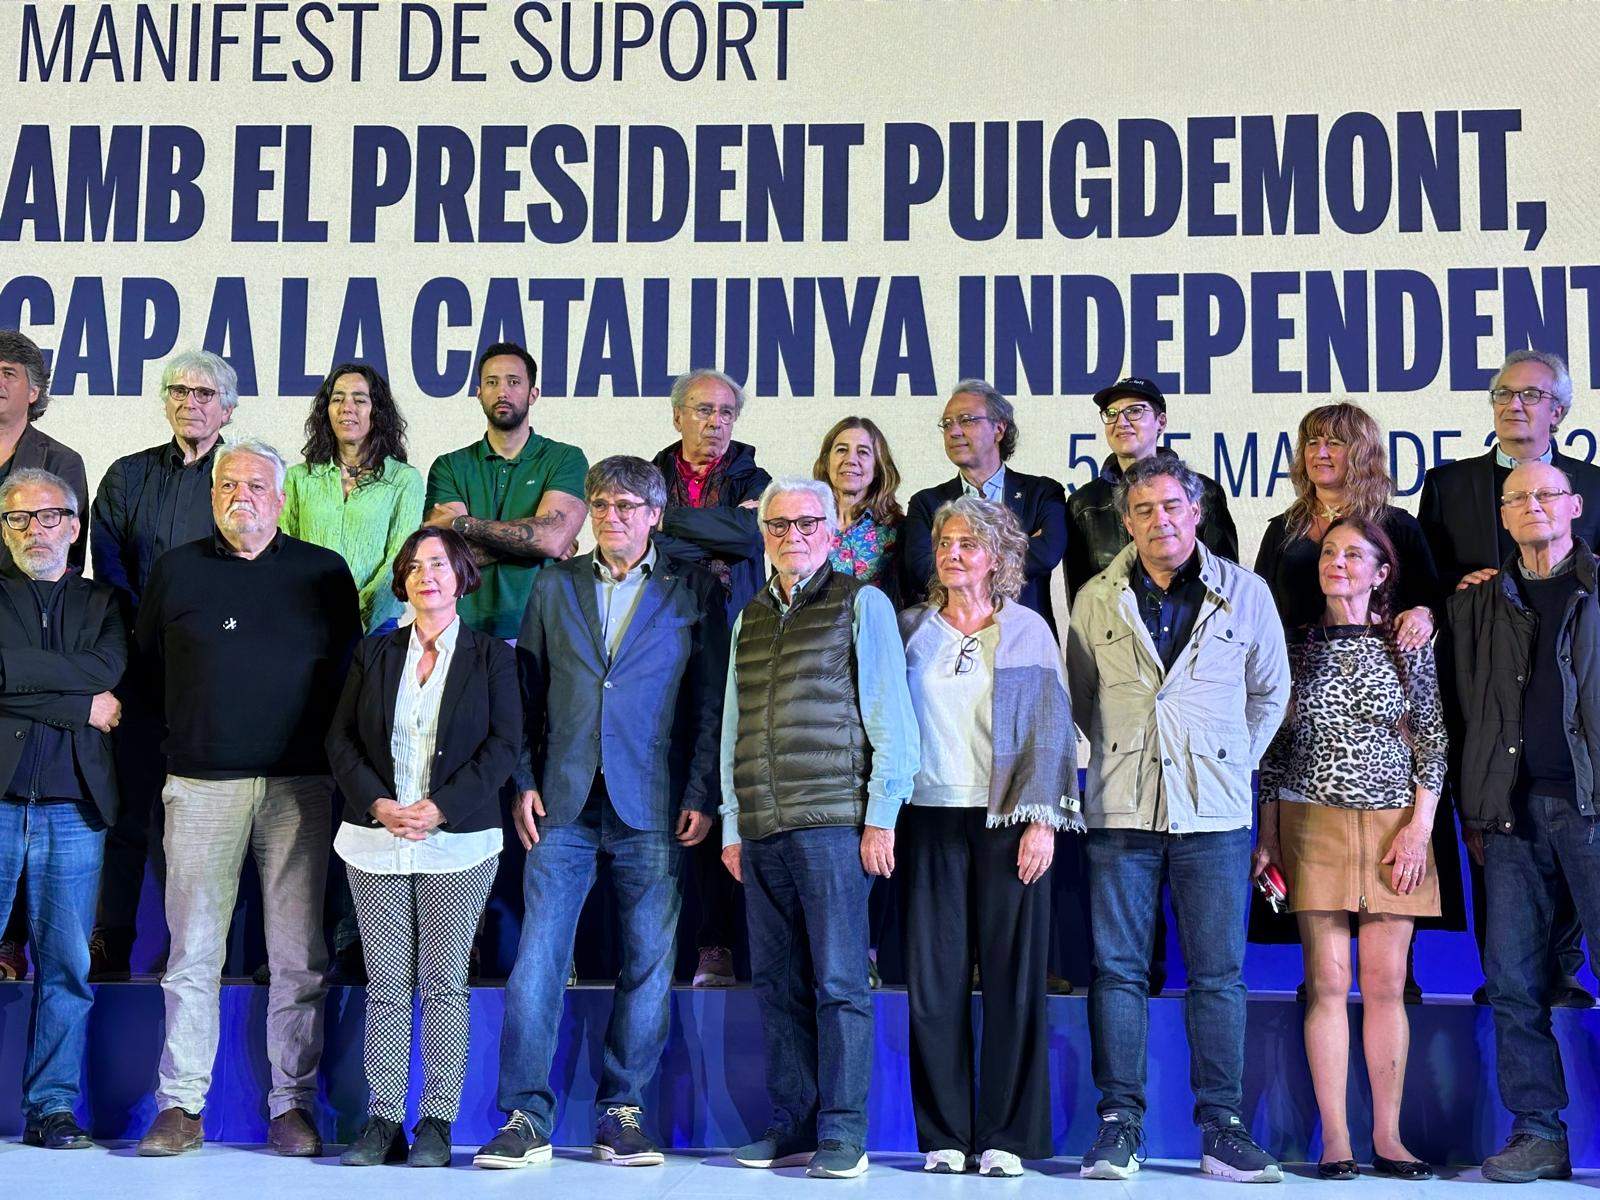 Puigdemont señala la transversalidad y la unidad como imprescindibles para la reanudación que quiere liderar